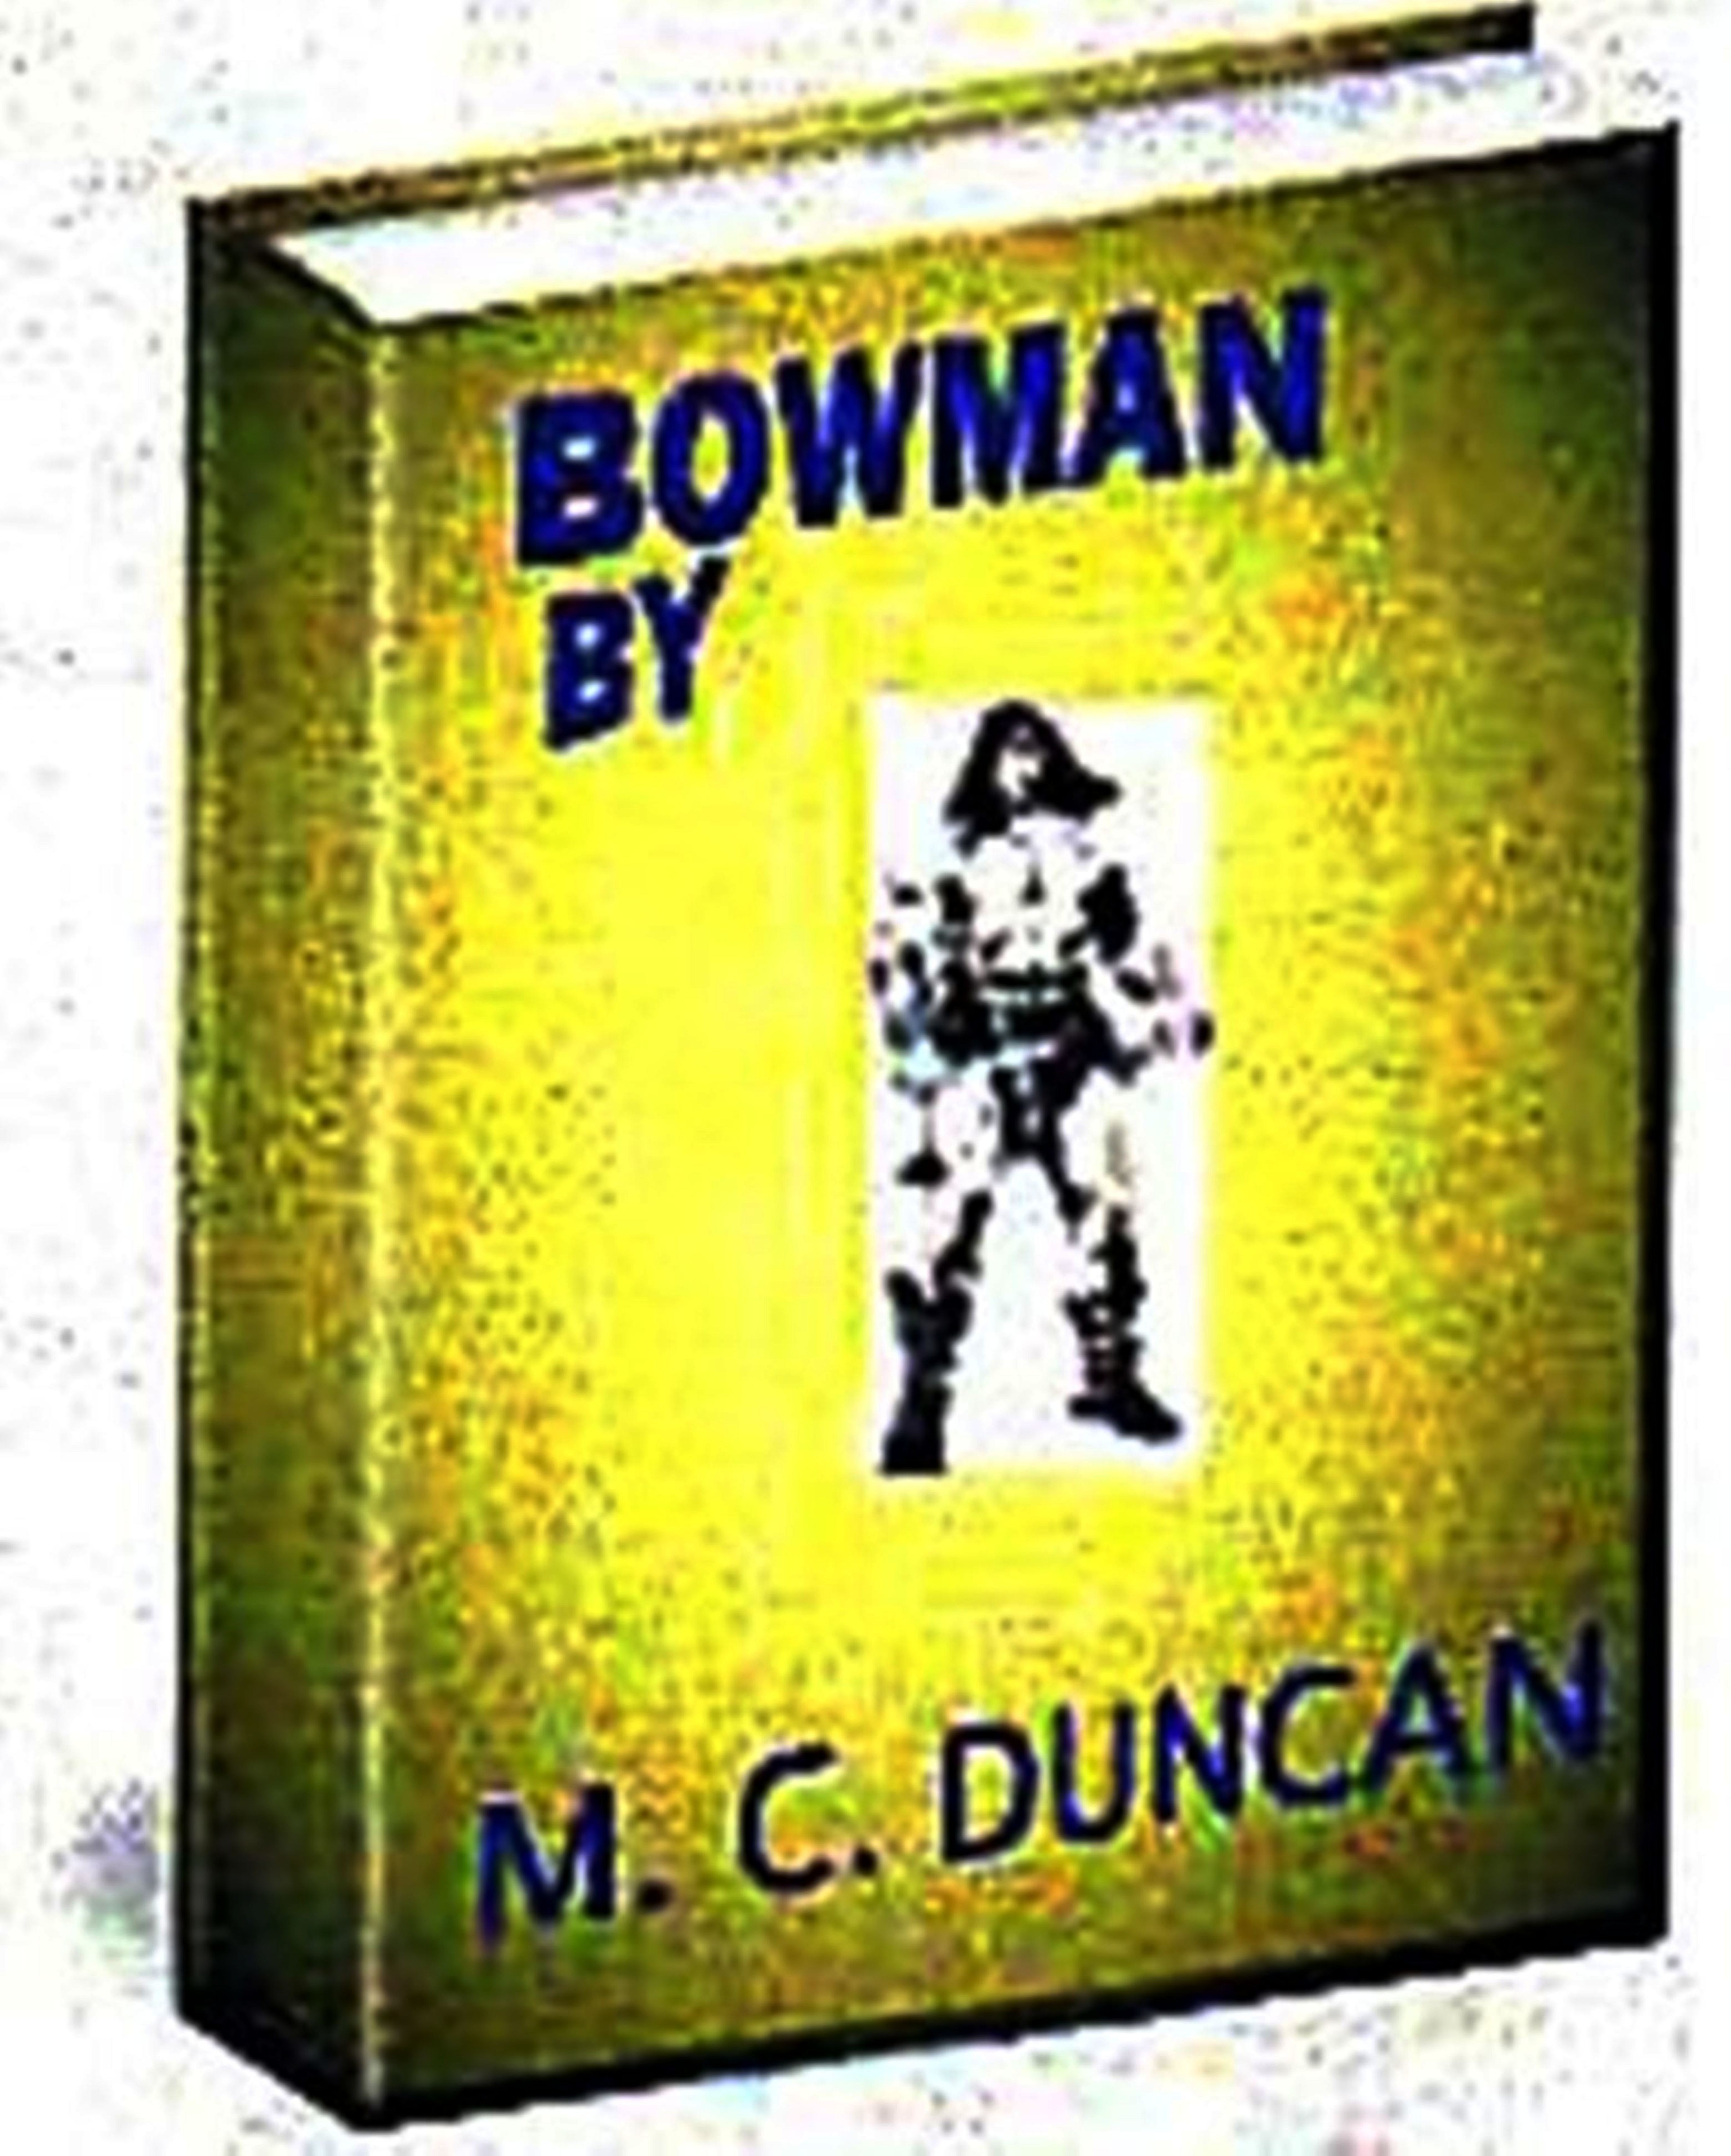 bowman-cover.jpg